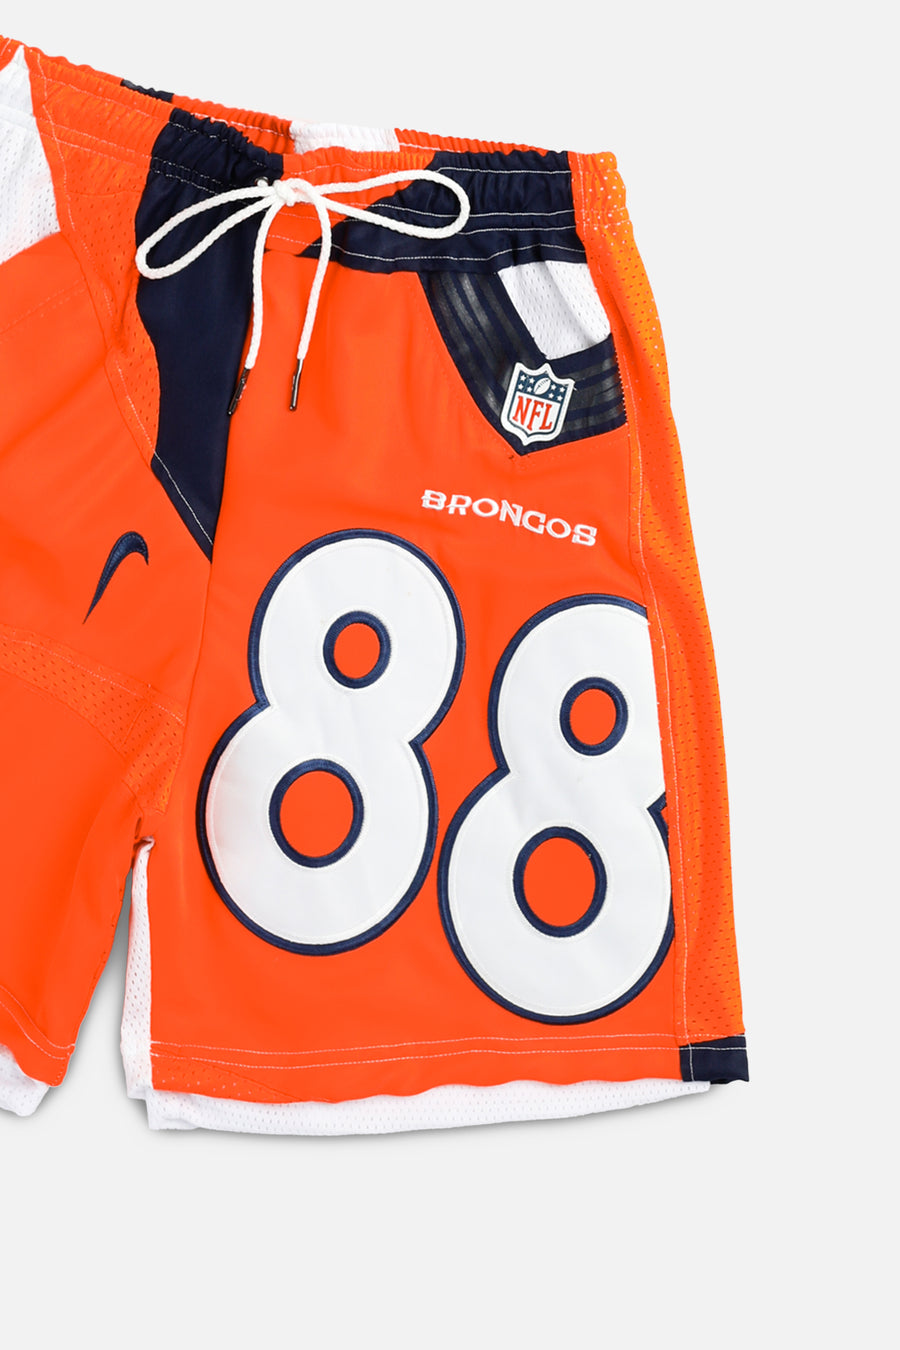 Unisex Rework Denver Broncos NFL Jersey Shorts - S